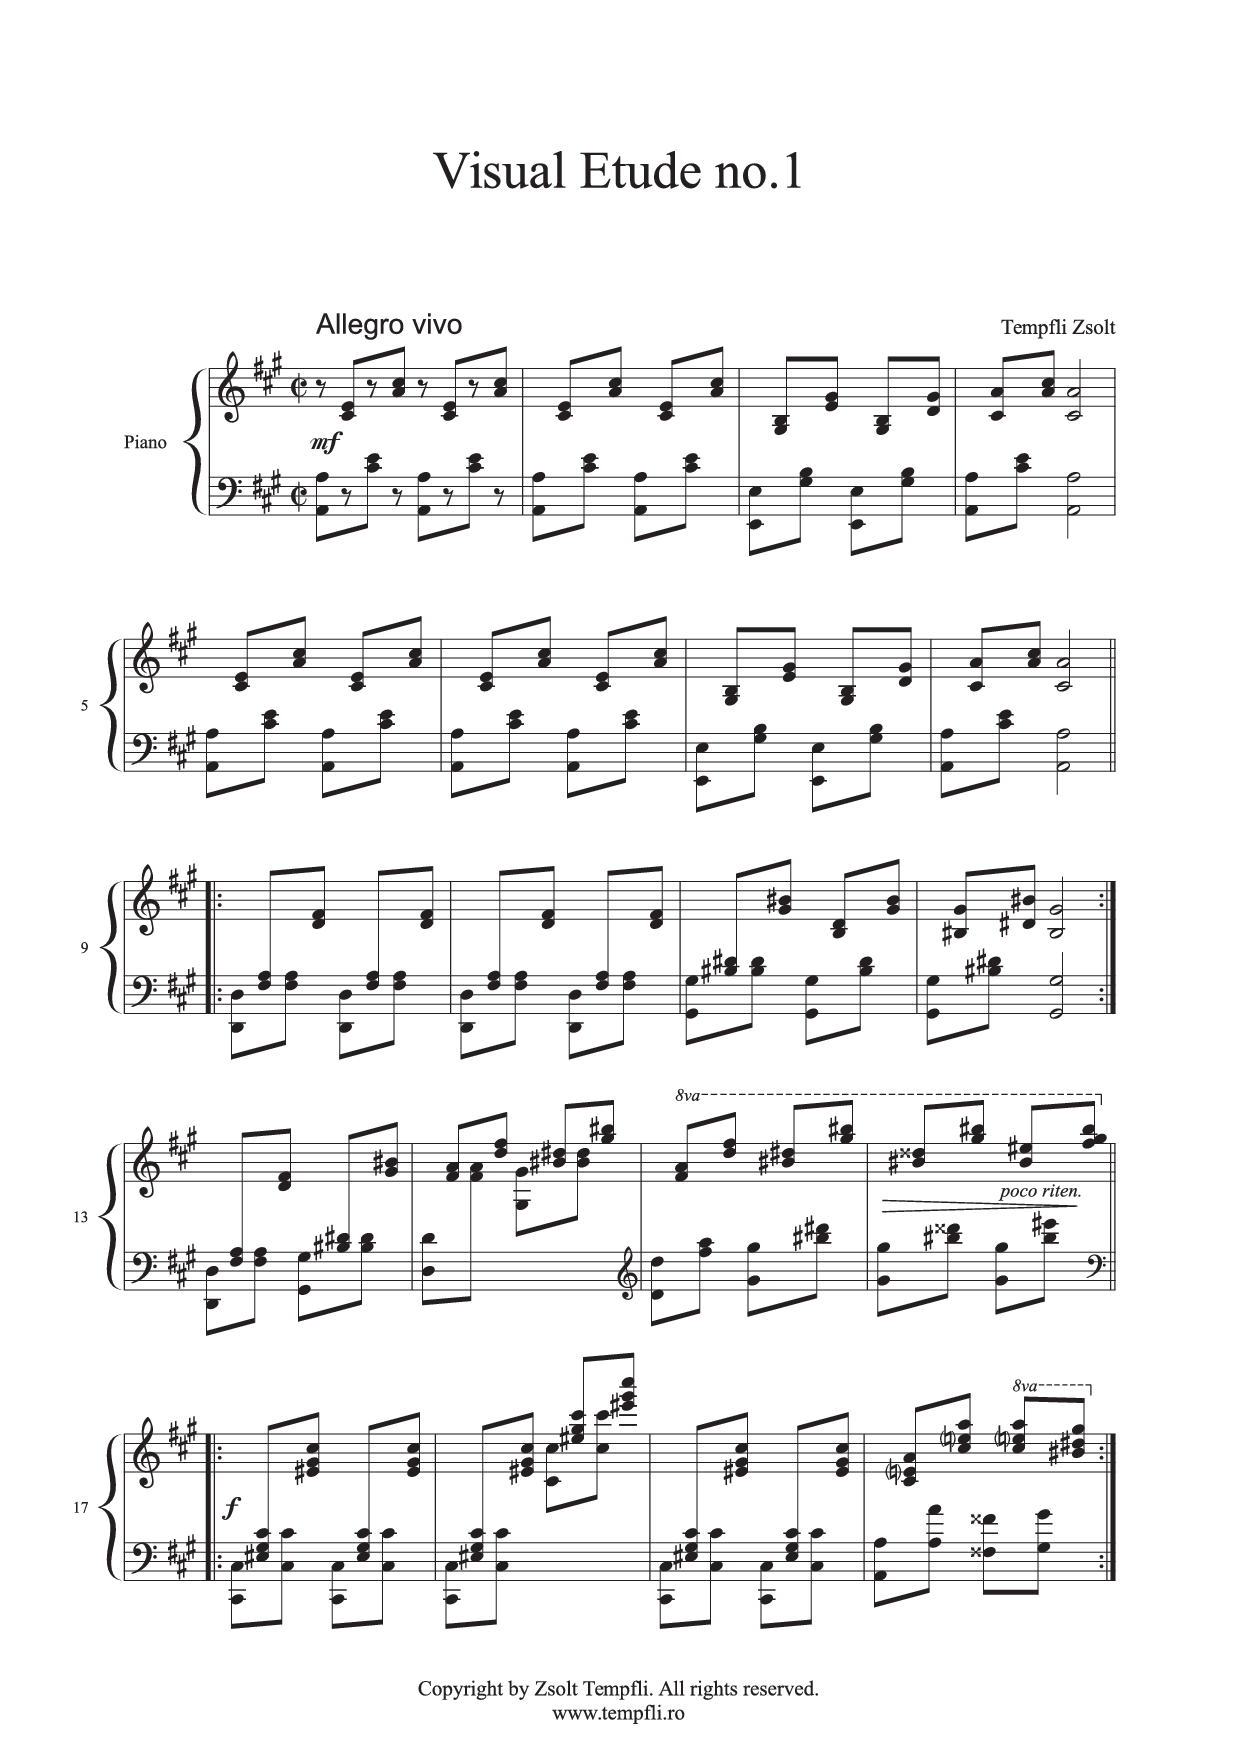 Tempfli Zsolt: Vizuális Etűd no. 1, op. 19 zongorára